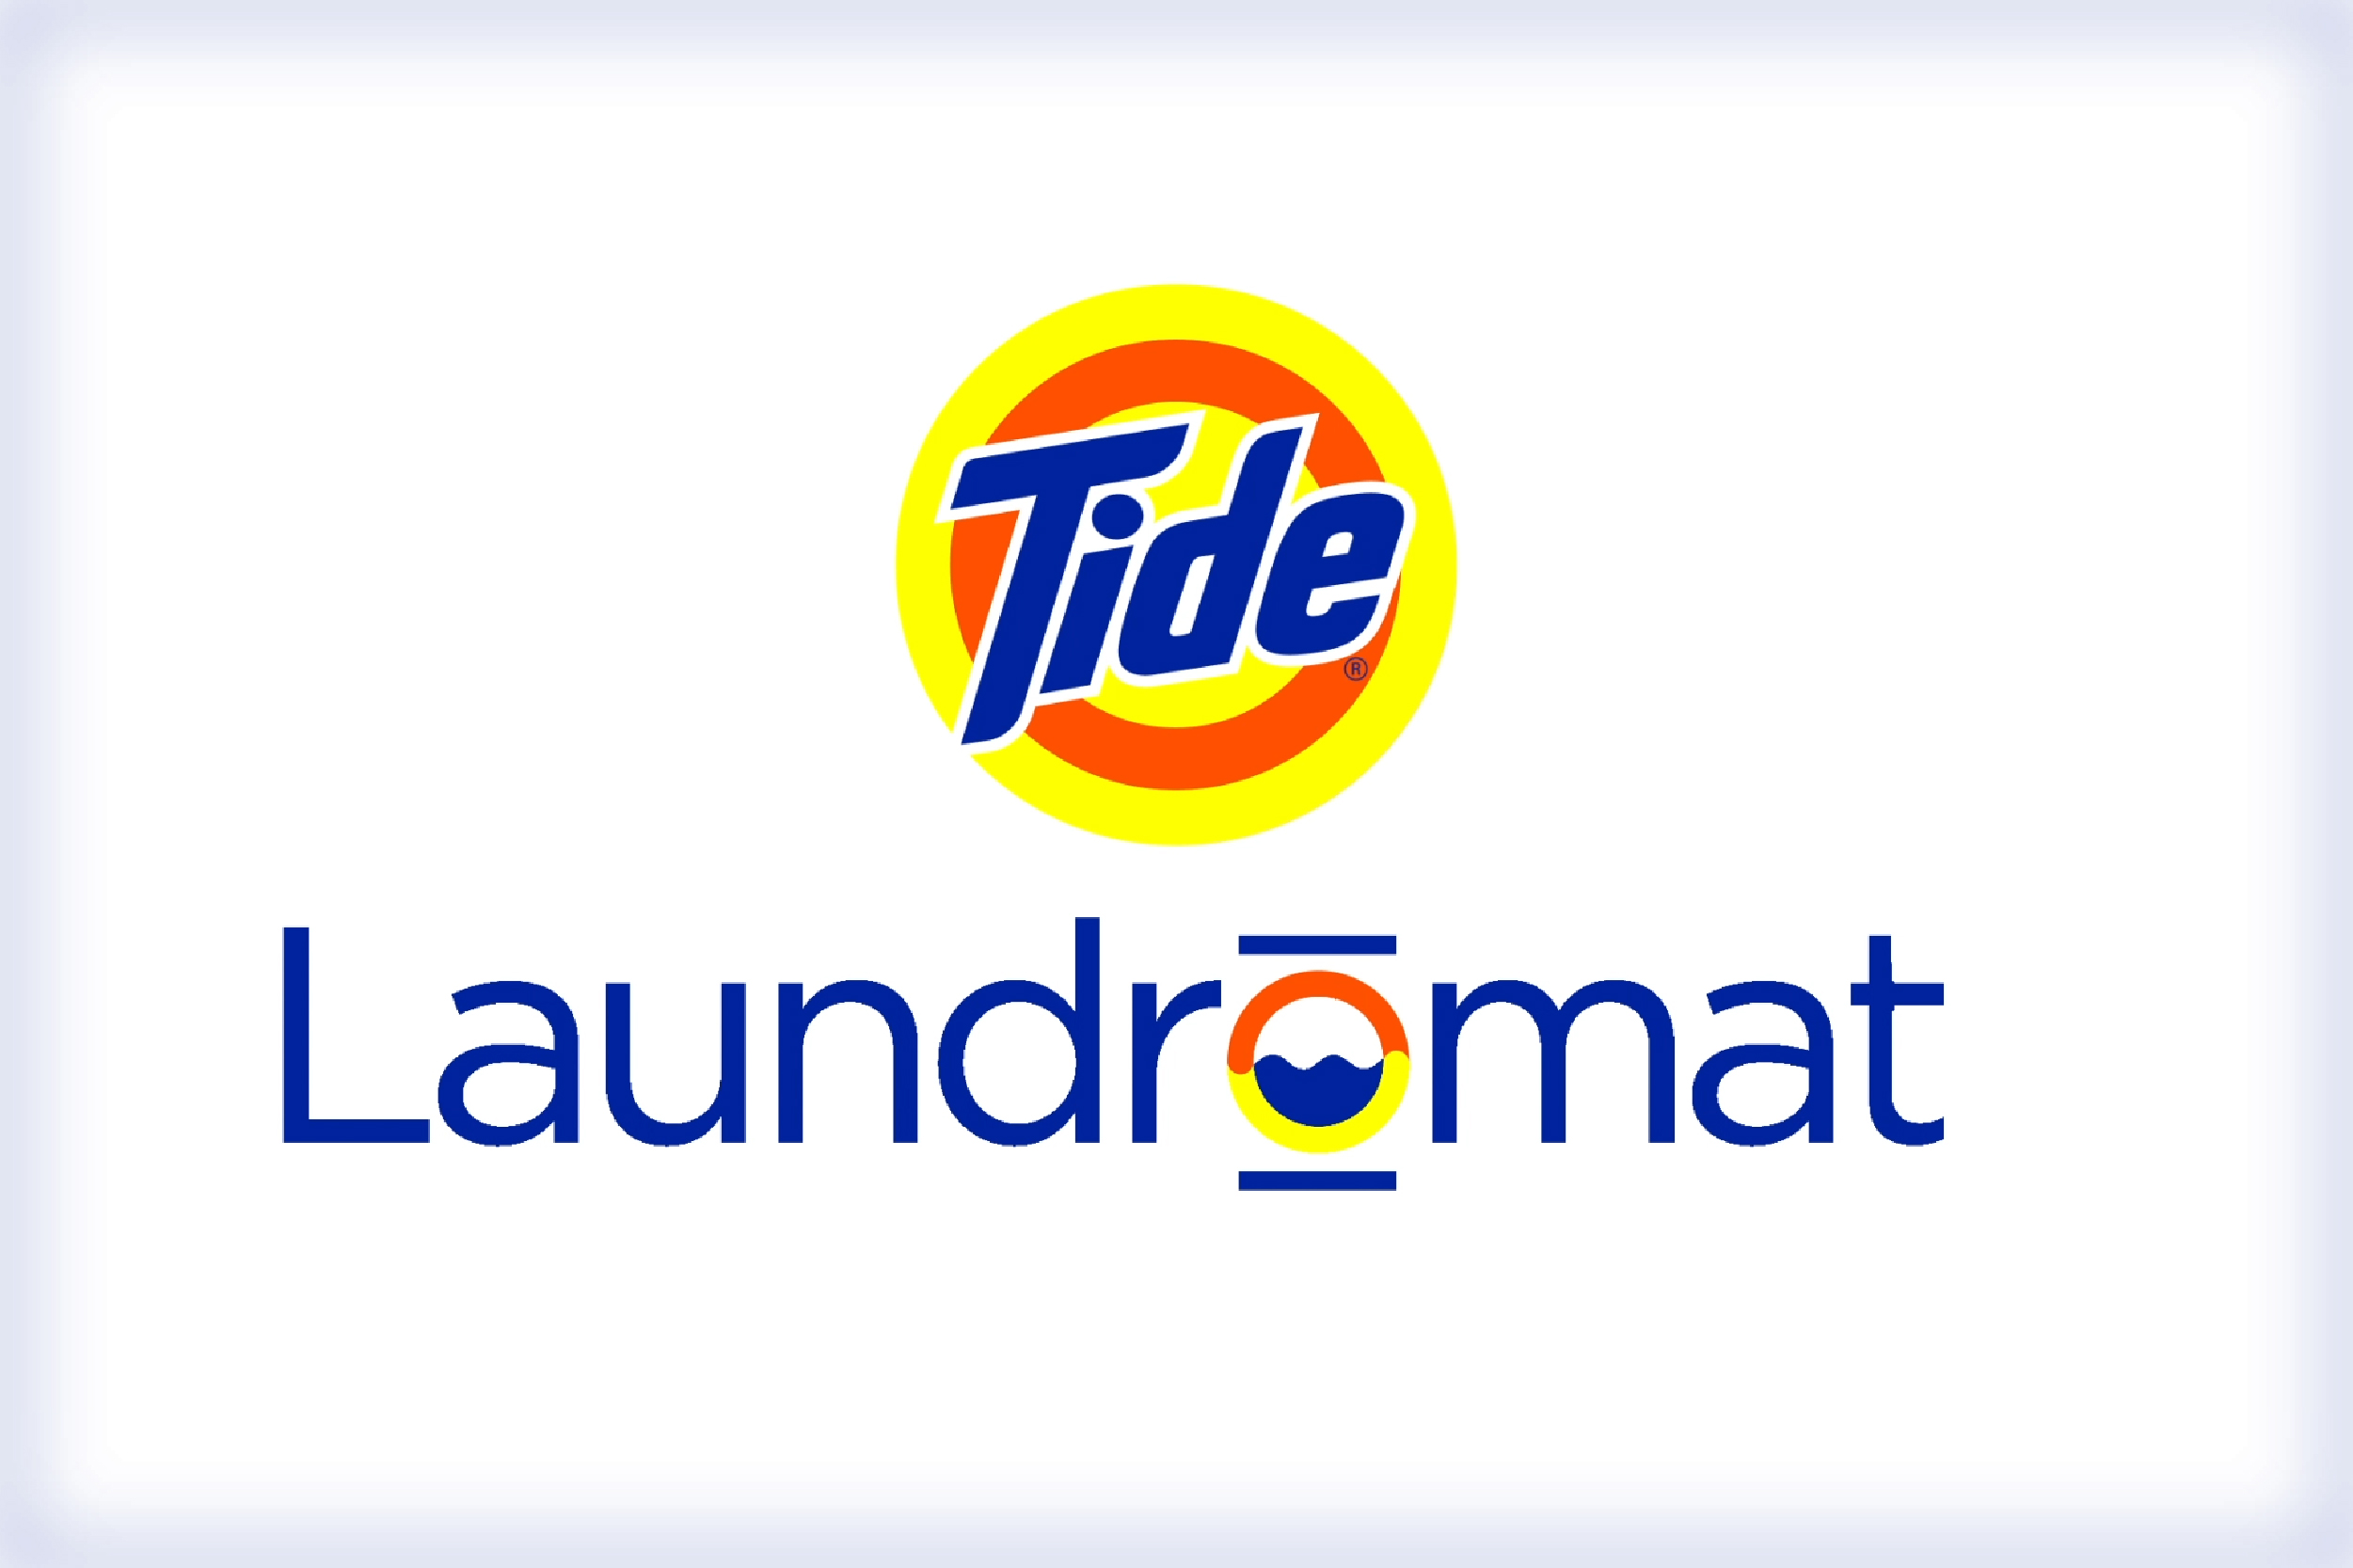 Tide Laundromat lockup